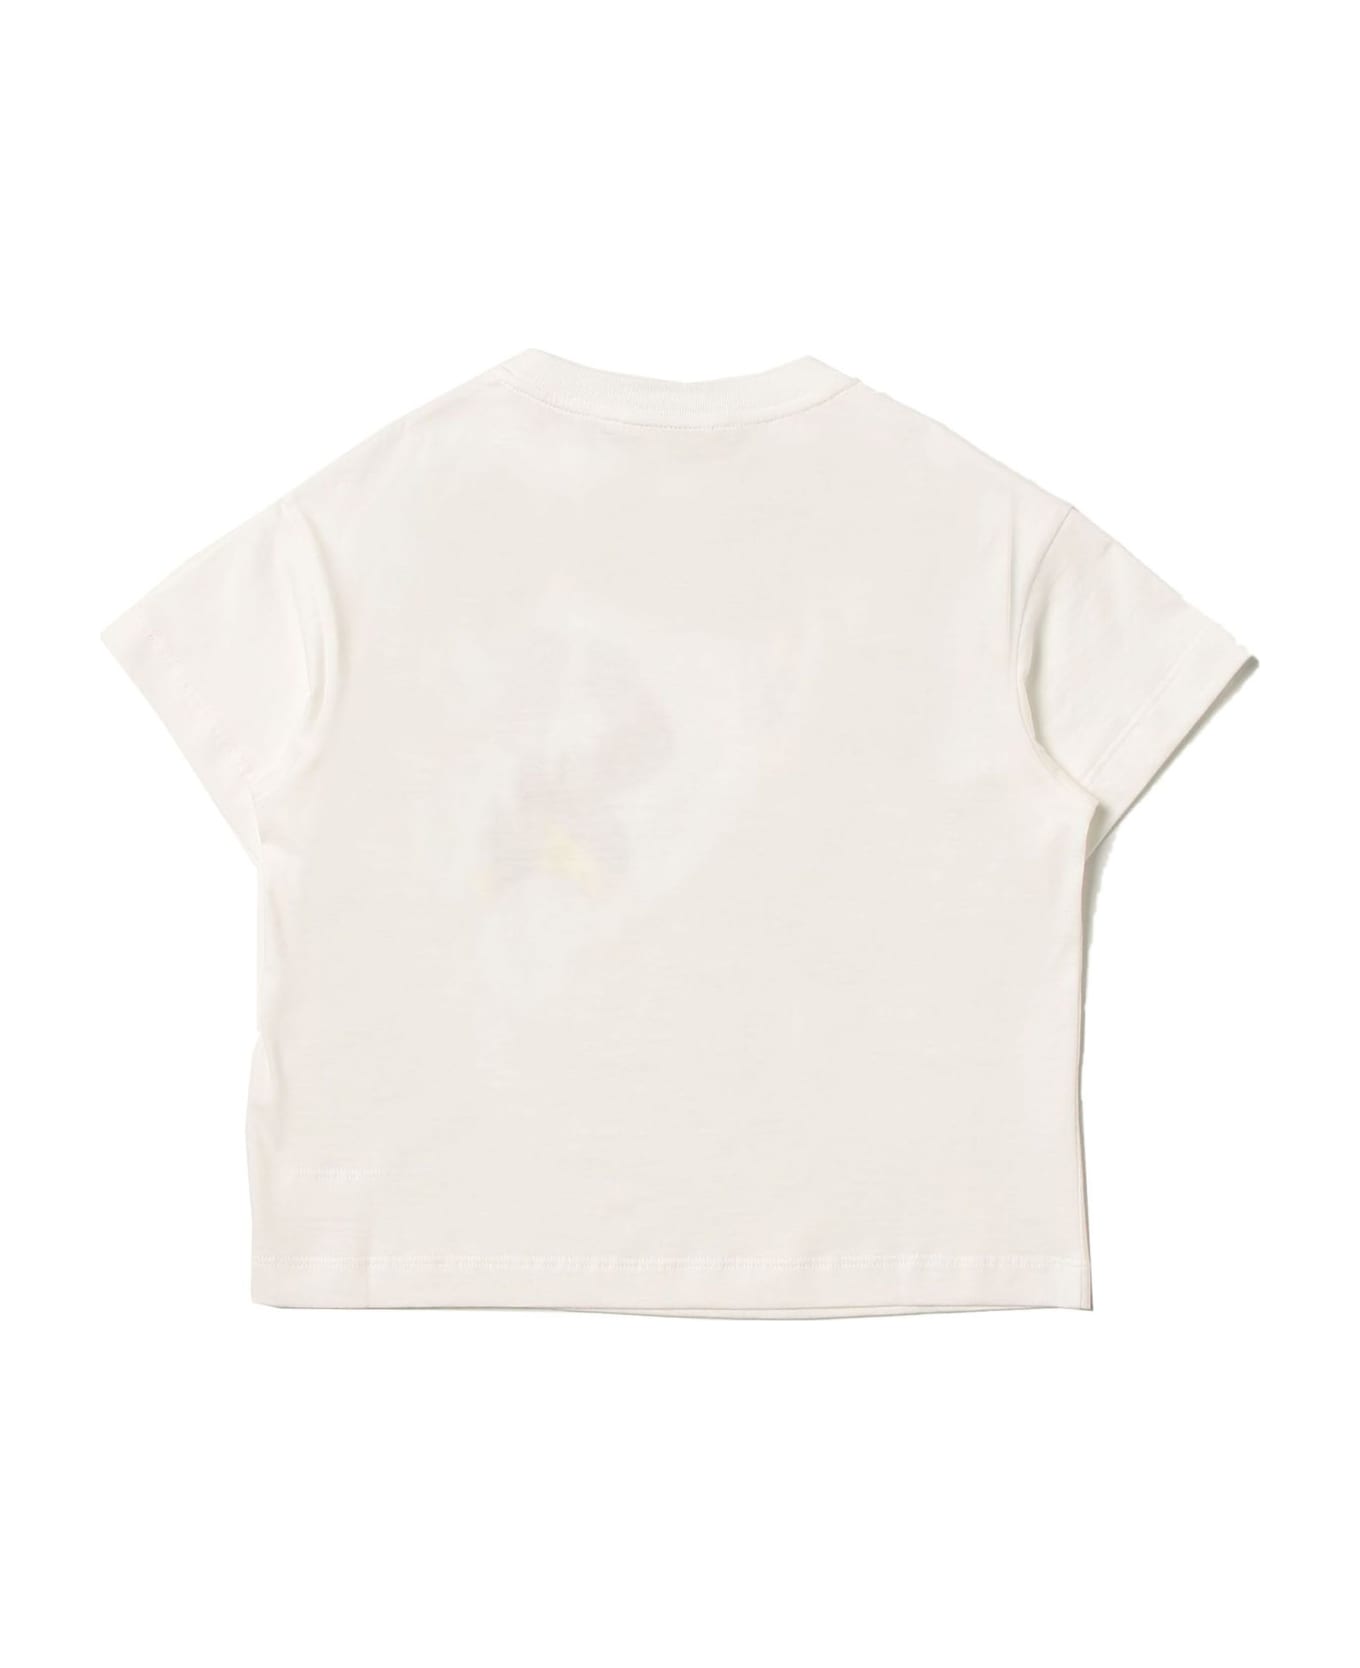 Fendi White Cotton Tshirt - Gesso